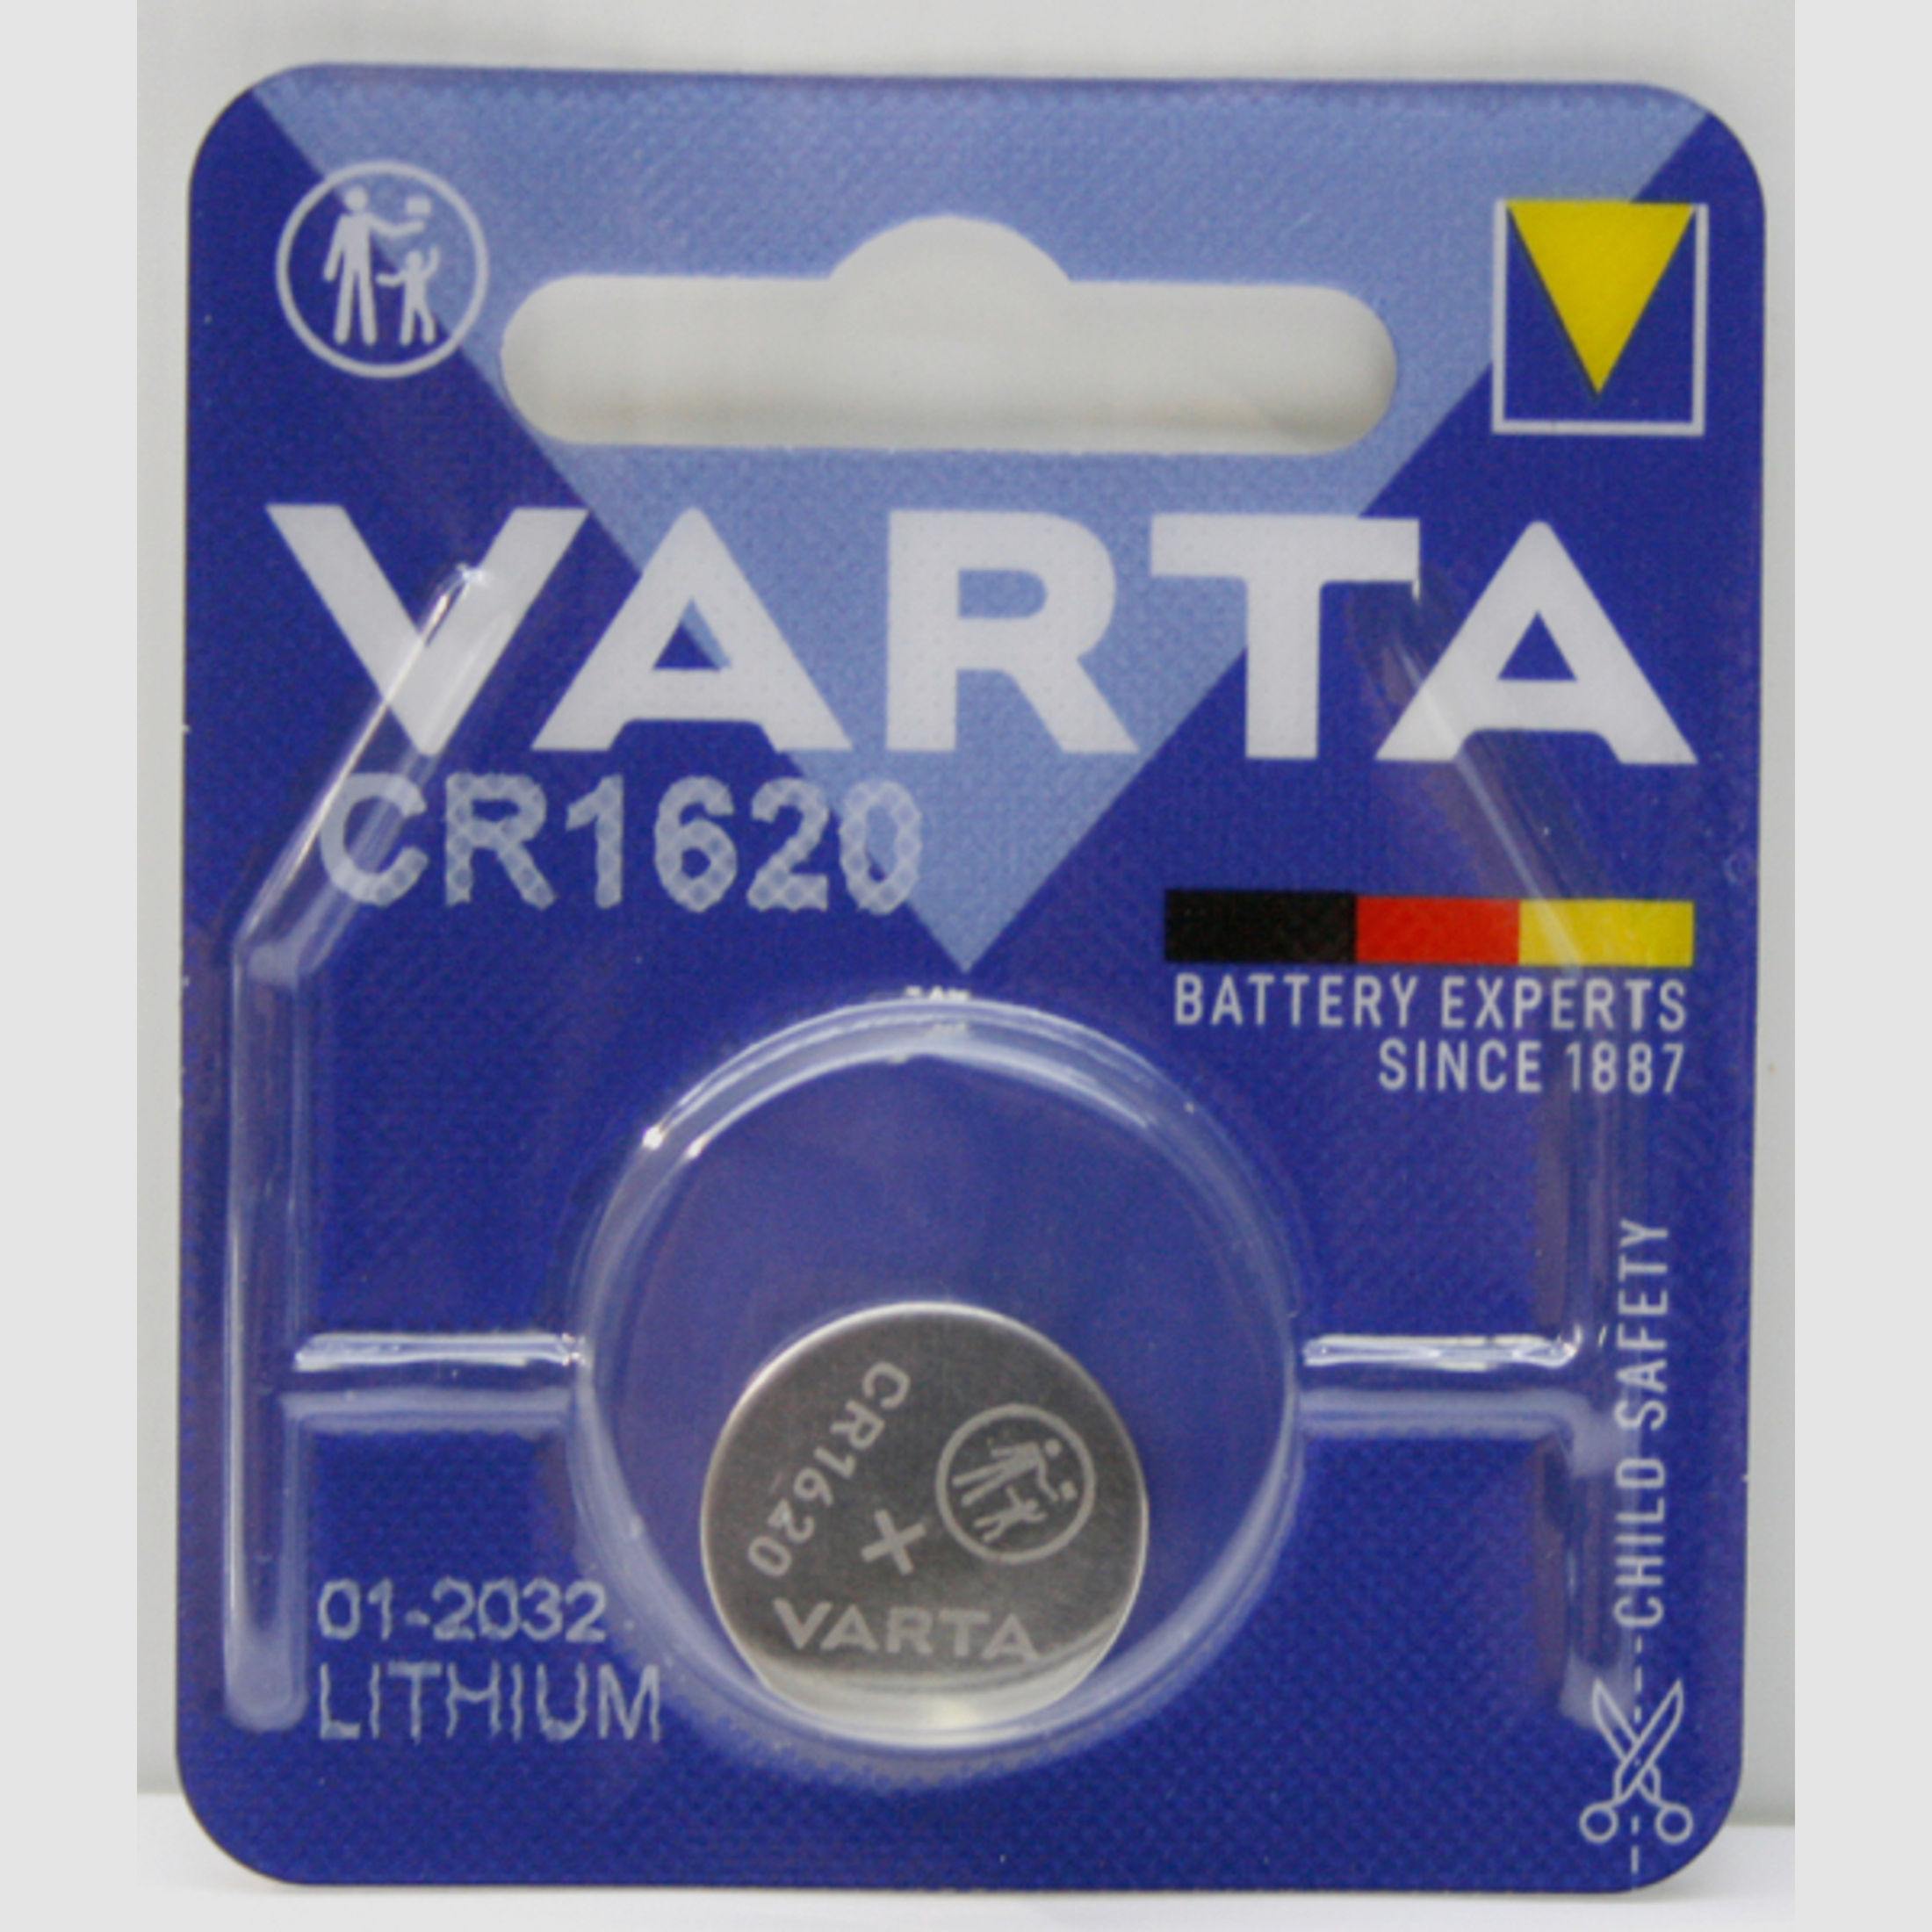 1 x VARTA CR1620 Professional Lithium Knopfzelle | Batterie für Zielfernrohre, Leuchtpunkt, etc...